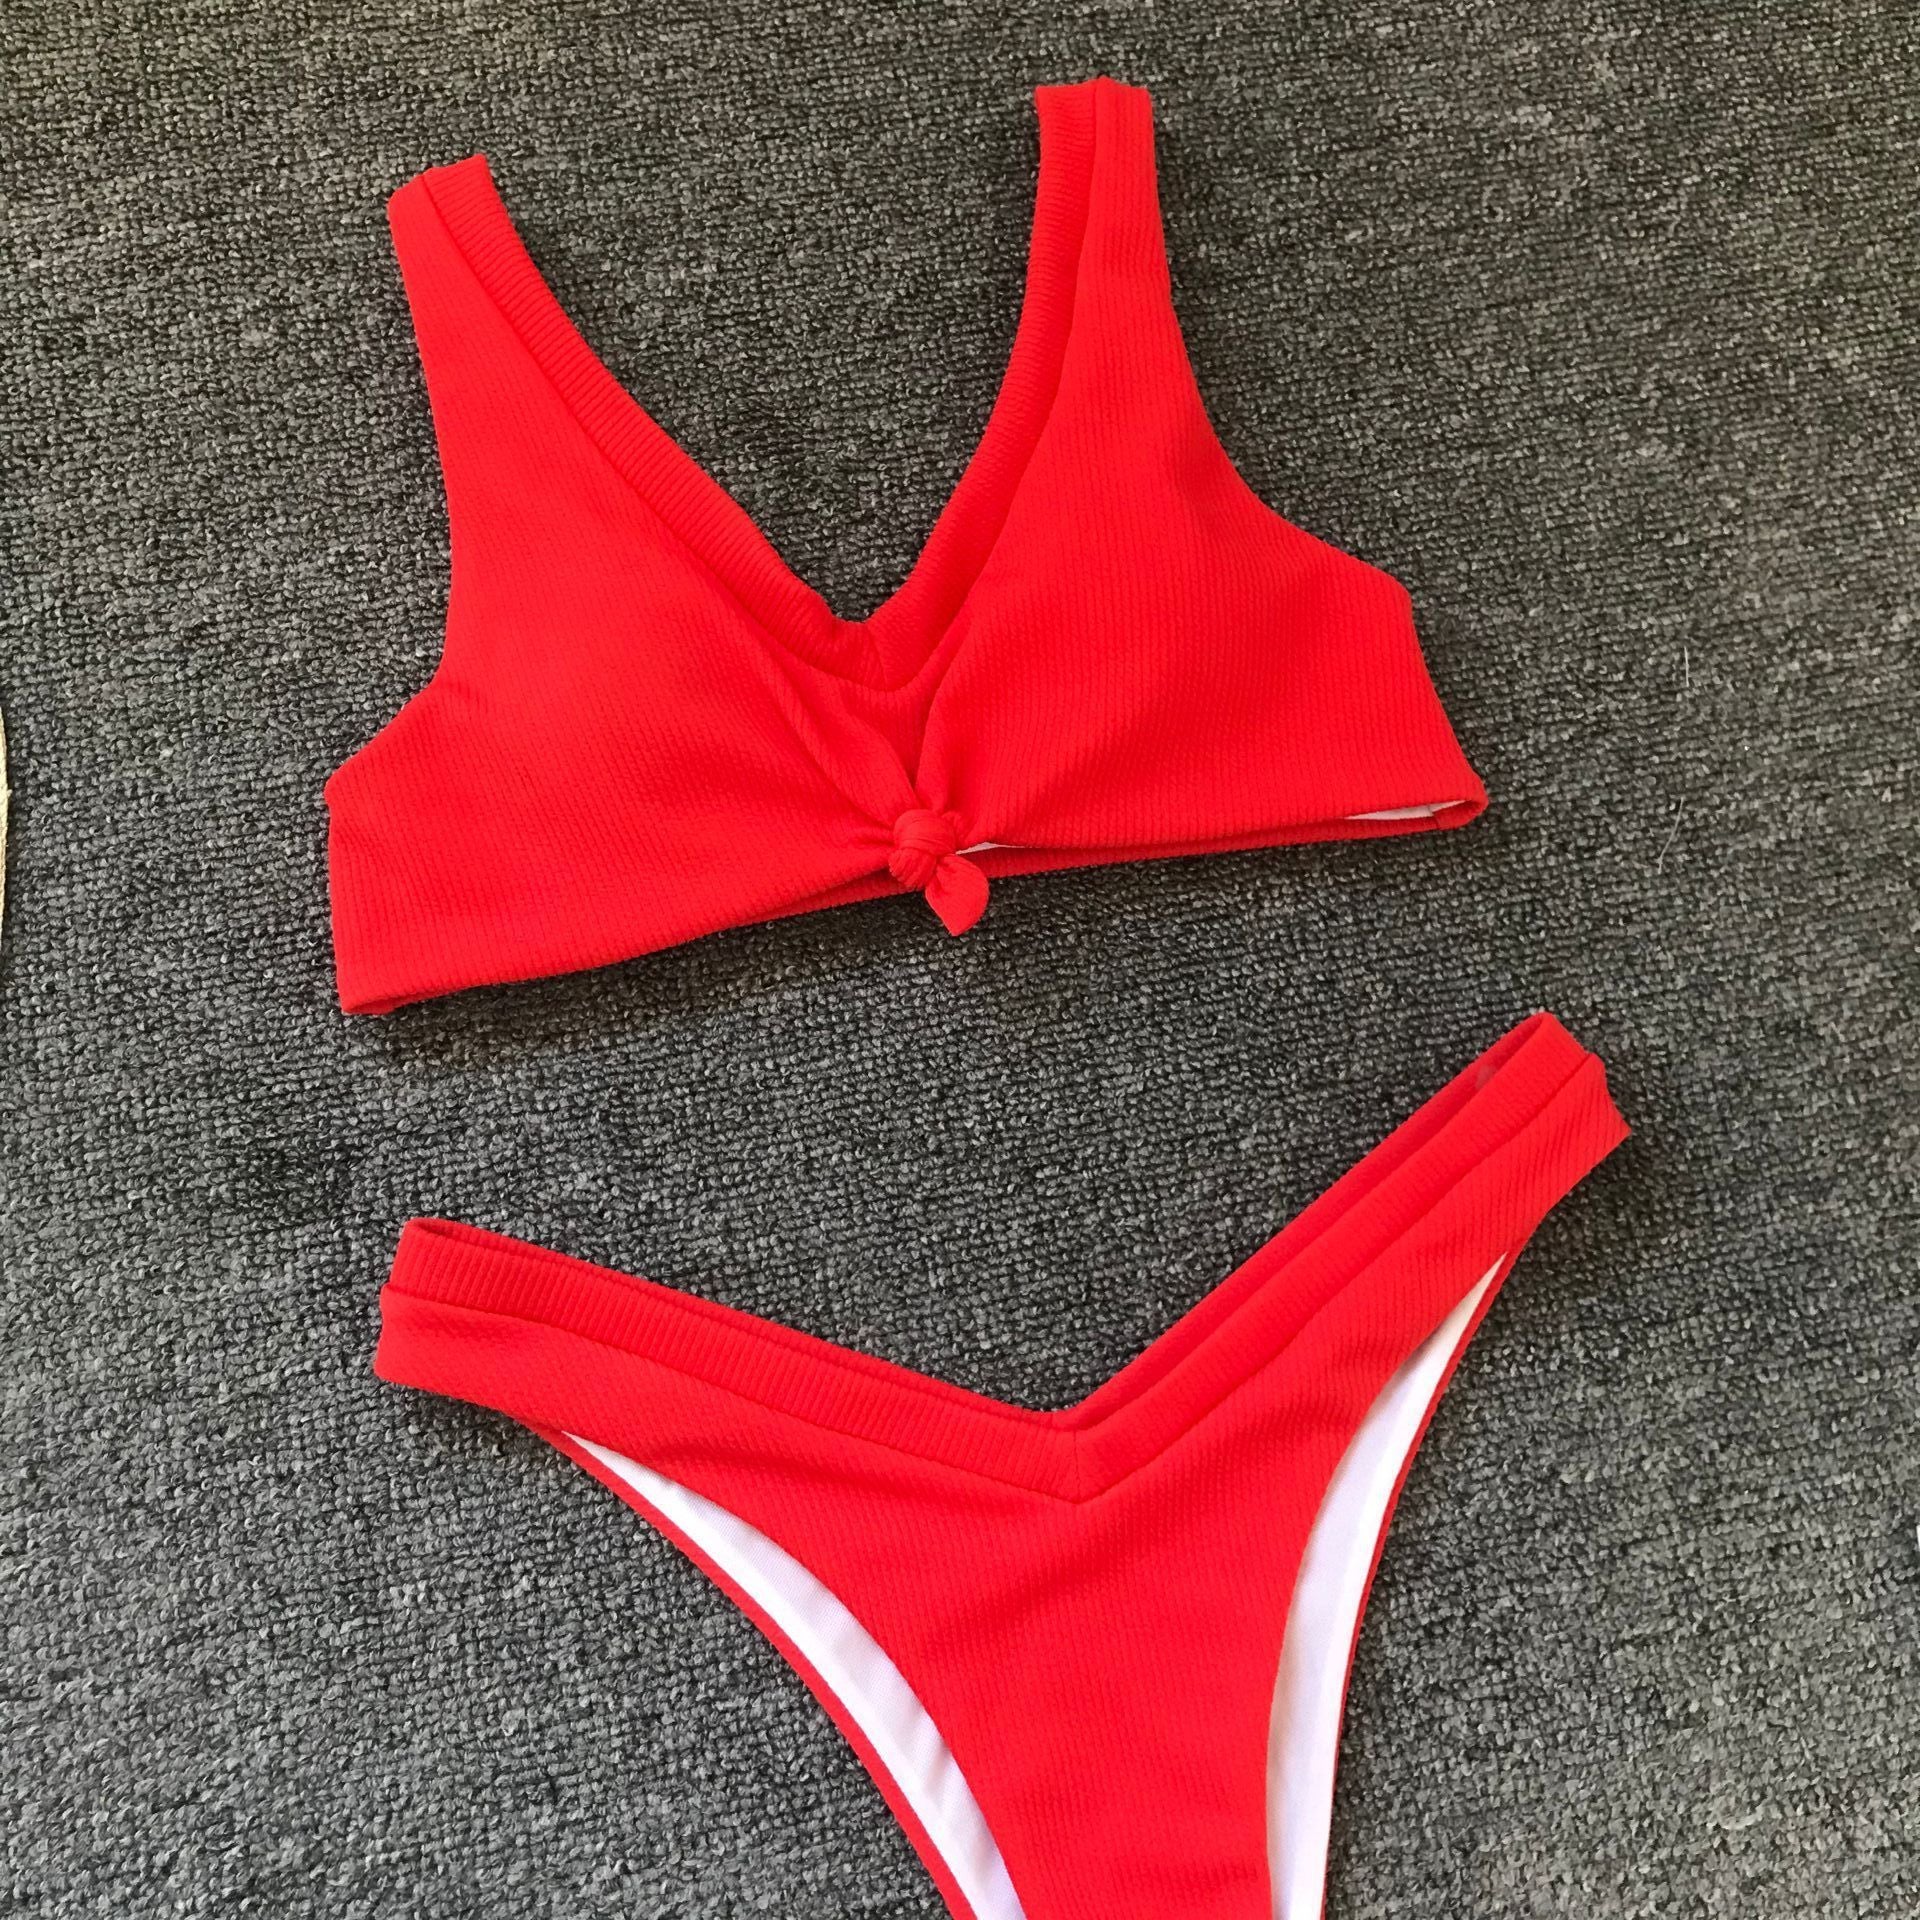 2020 Hot Sale Red Bikini Padded Tie Low Waist Sexy Swimsuit Female Swimwear Women Bathing Suit Brazilian Bikini